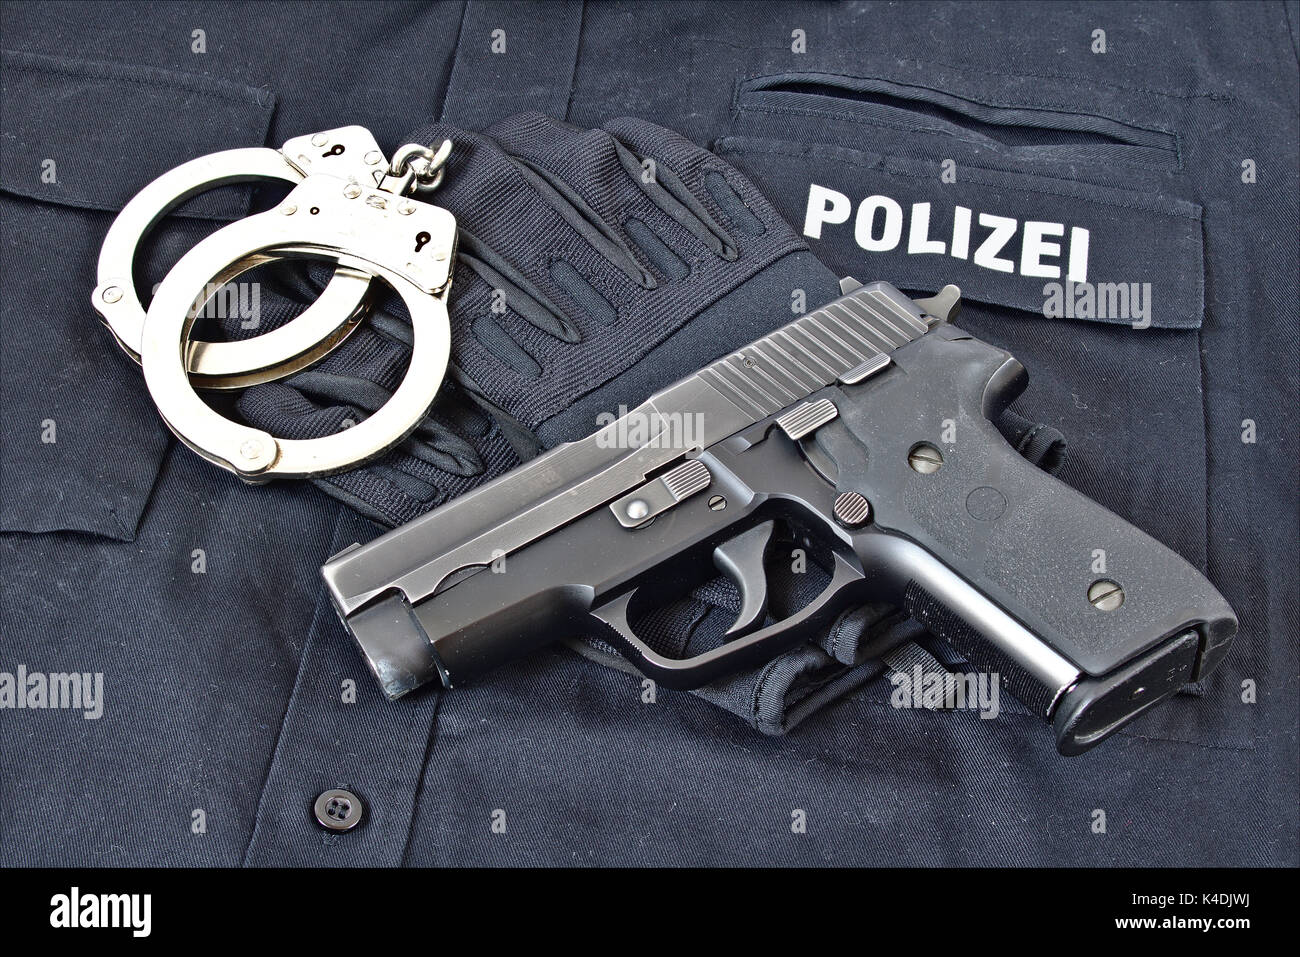 Pistole mit Handschellen und Handschuhe auf blauen Uniform Shirt mit 'Polizei' in deutscher Sprache auf es Stockfoto